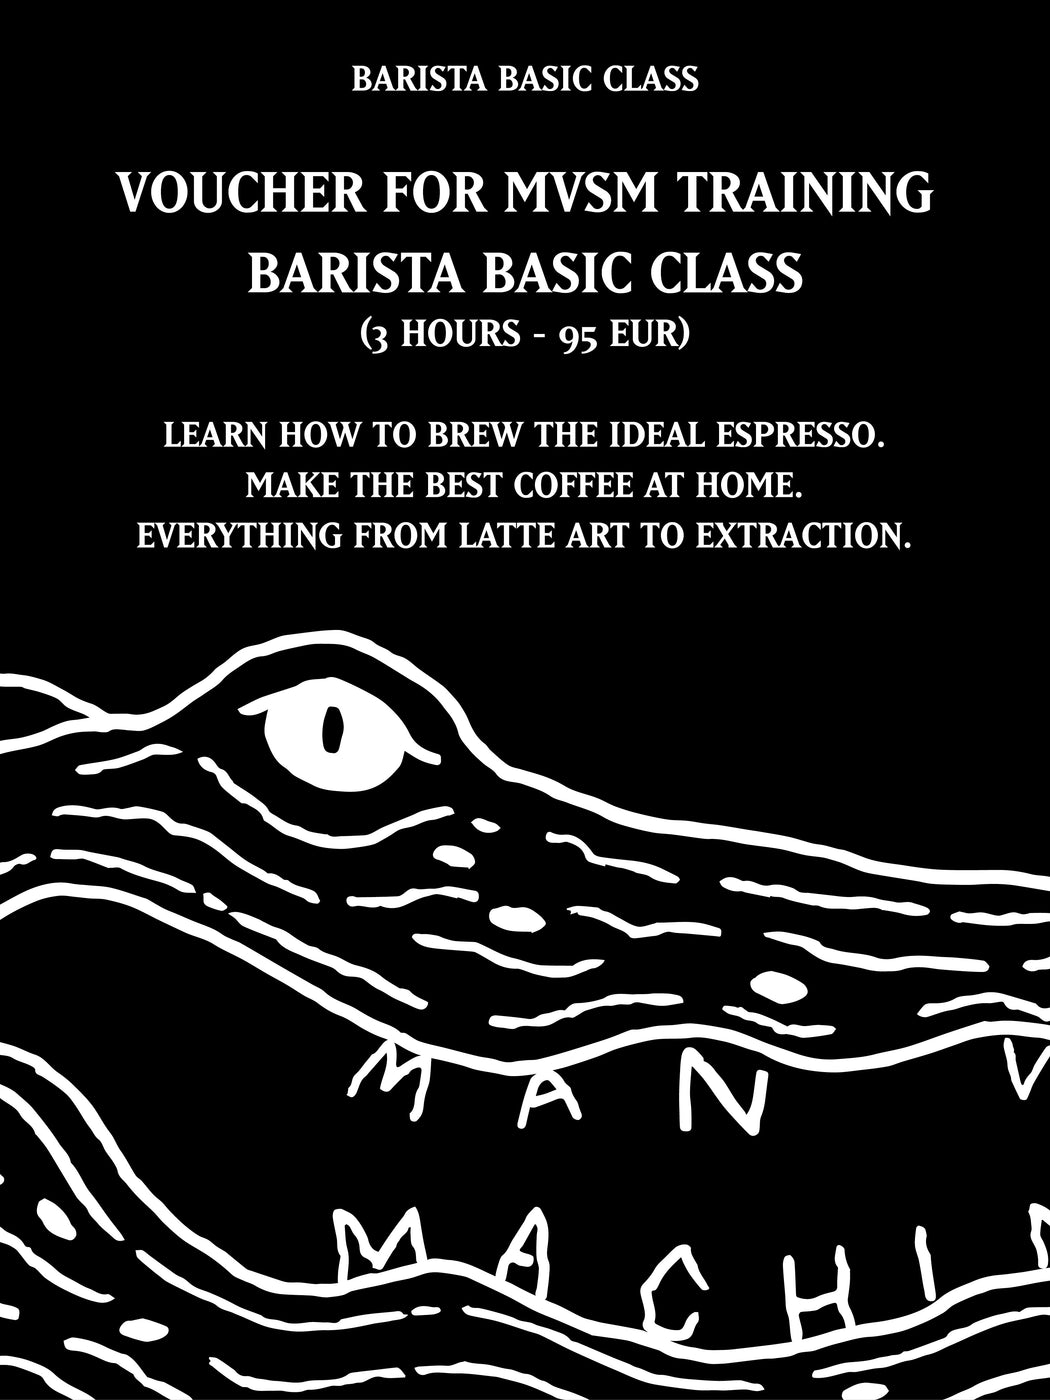 MVSM CLASS BARISTA BASIC